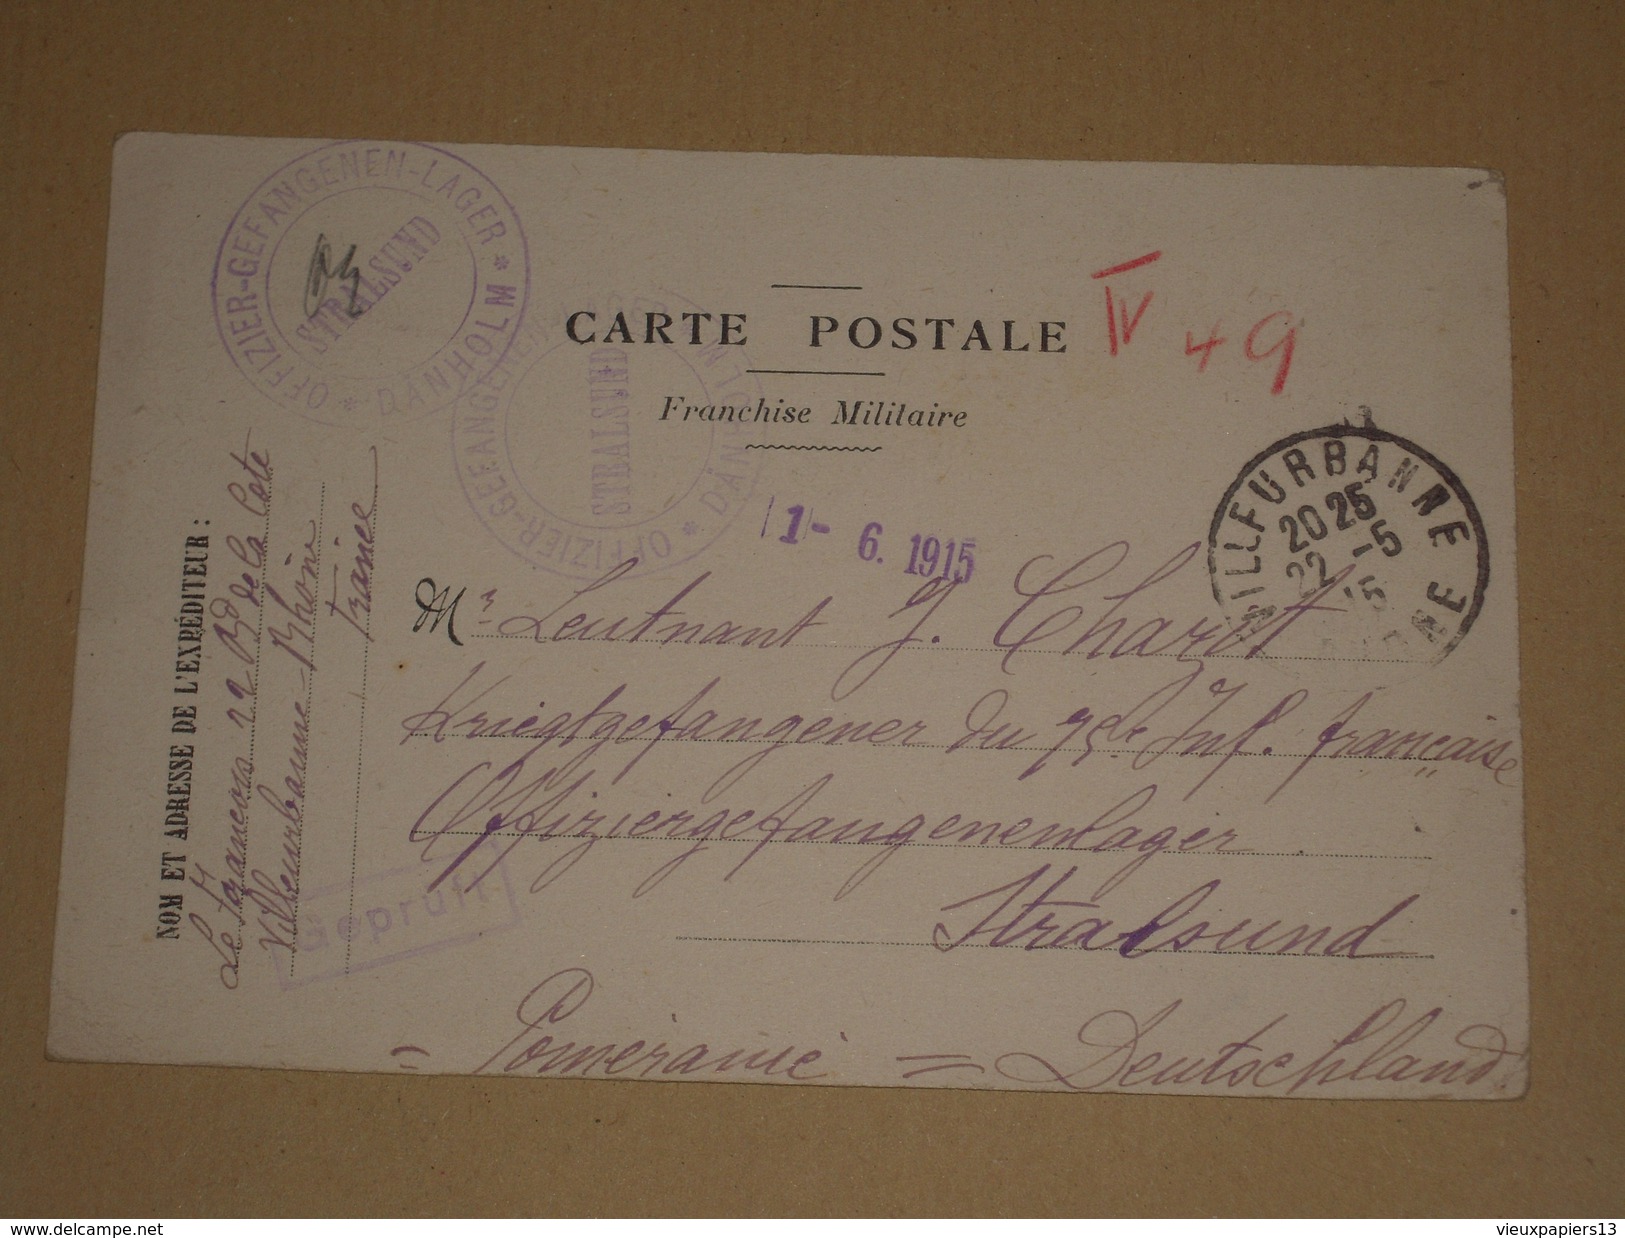 WW1 1915 Carte En Franchise Militaire Pour Officier Du 75e RI Prisonnier Camp De Stralsund Poméranie Allemagne/12 Lignes - 1. Weltkrieg 1914-1918